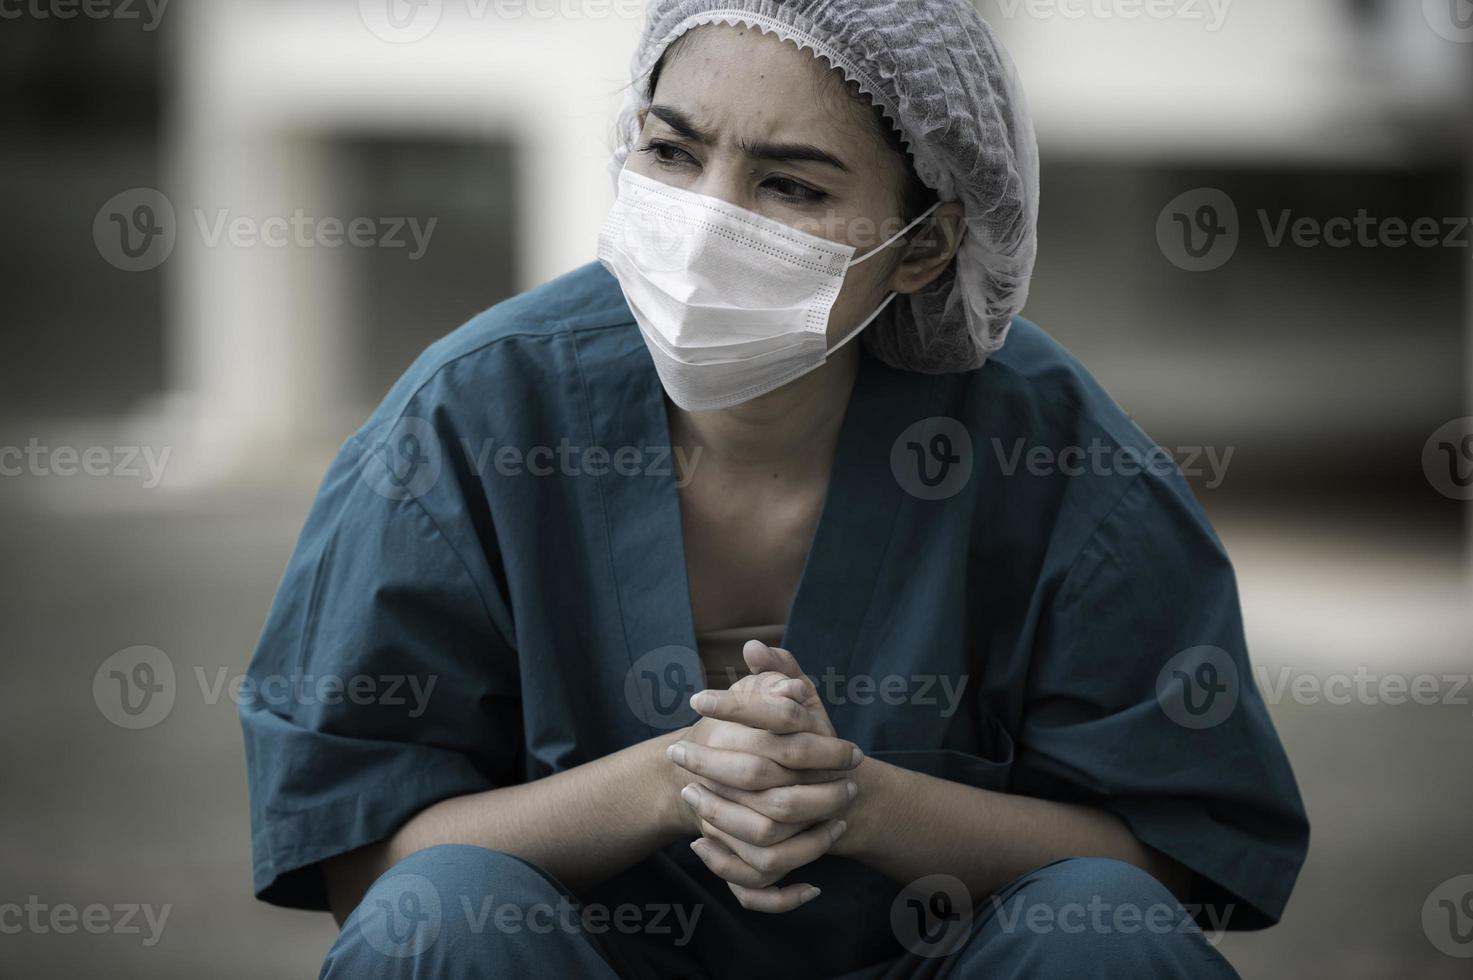 trött deprimerad kvinnlig asiatisk skrubbsköterska bär ansiktsmask blå uniform sitter på sjukhusgolvet, ung kvinna läkare stressad av hårt arbete foto